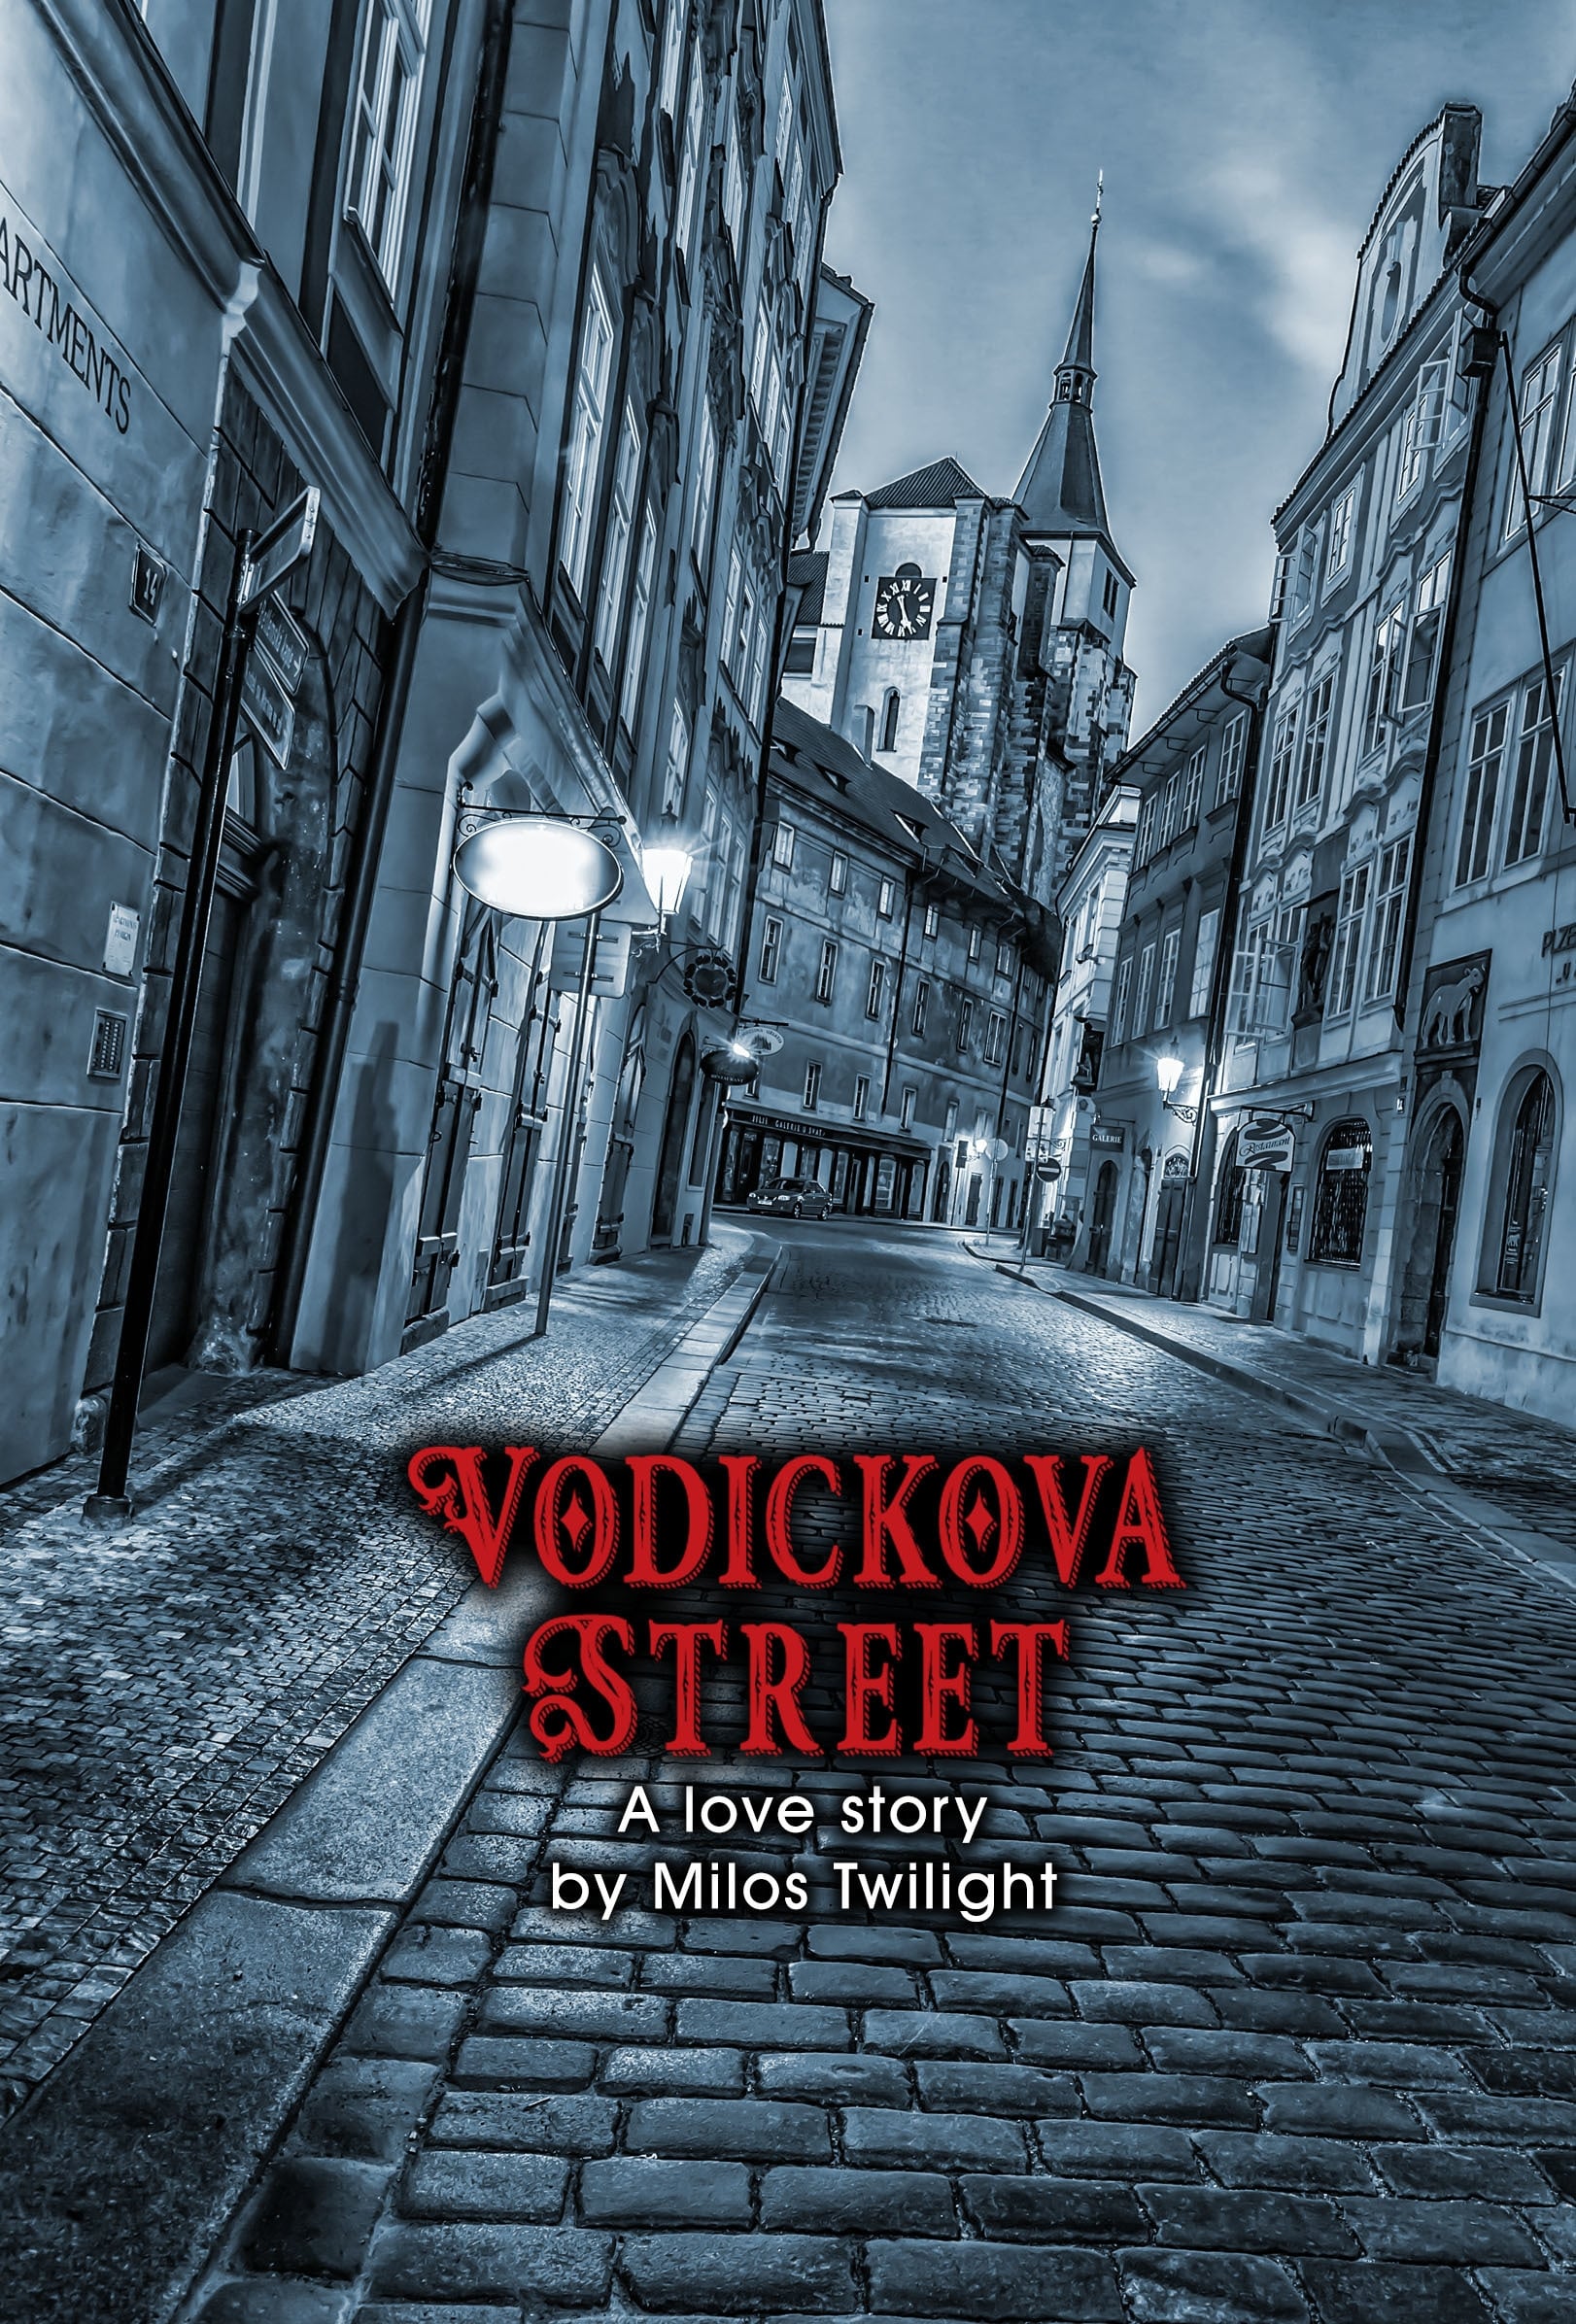 Vodickova Street